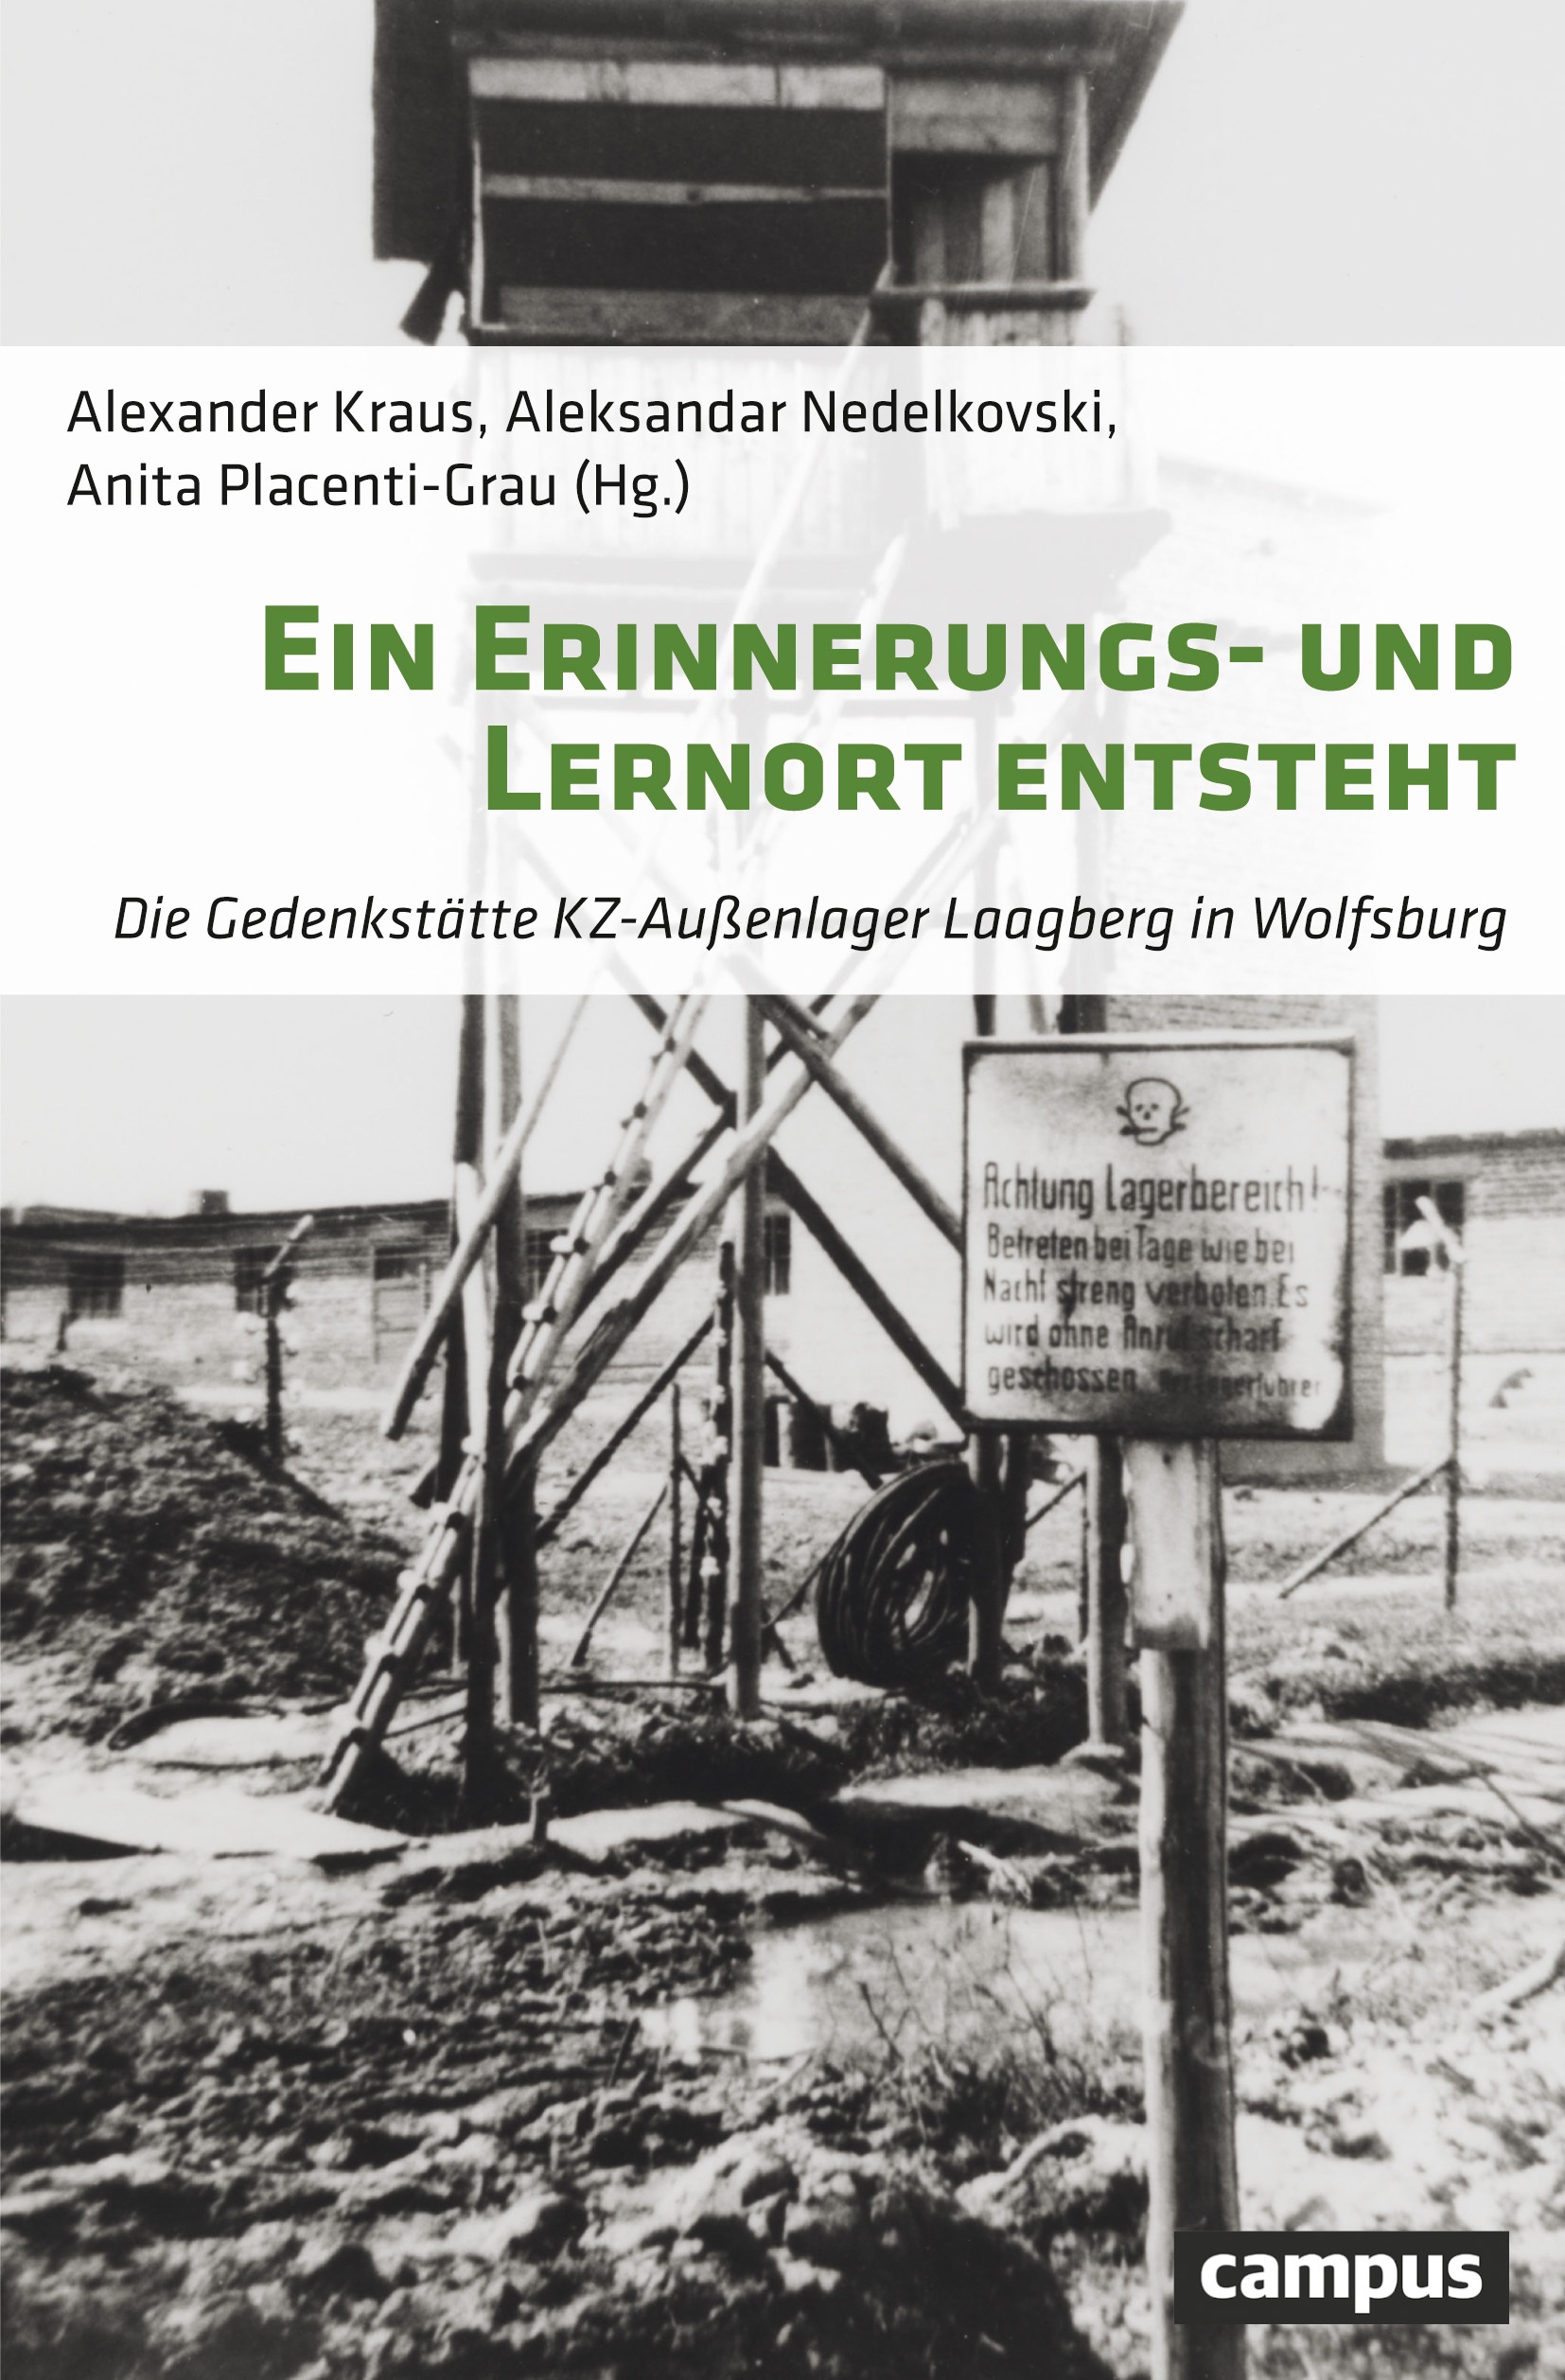 Title page of the book "Ein Erinnerungs- und Lernort entsteht. The Laagberg Subcamp Memorial in Wolfsburg"